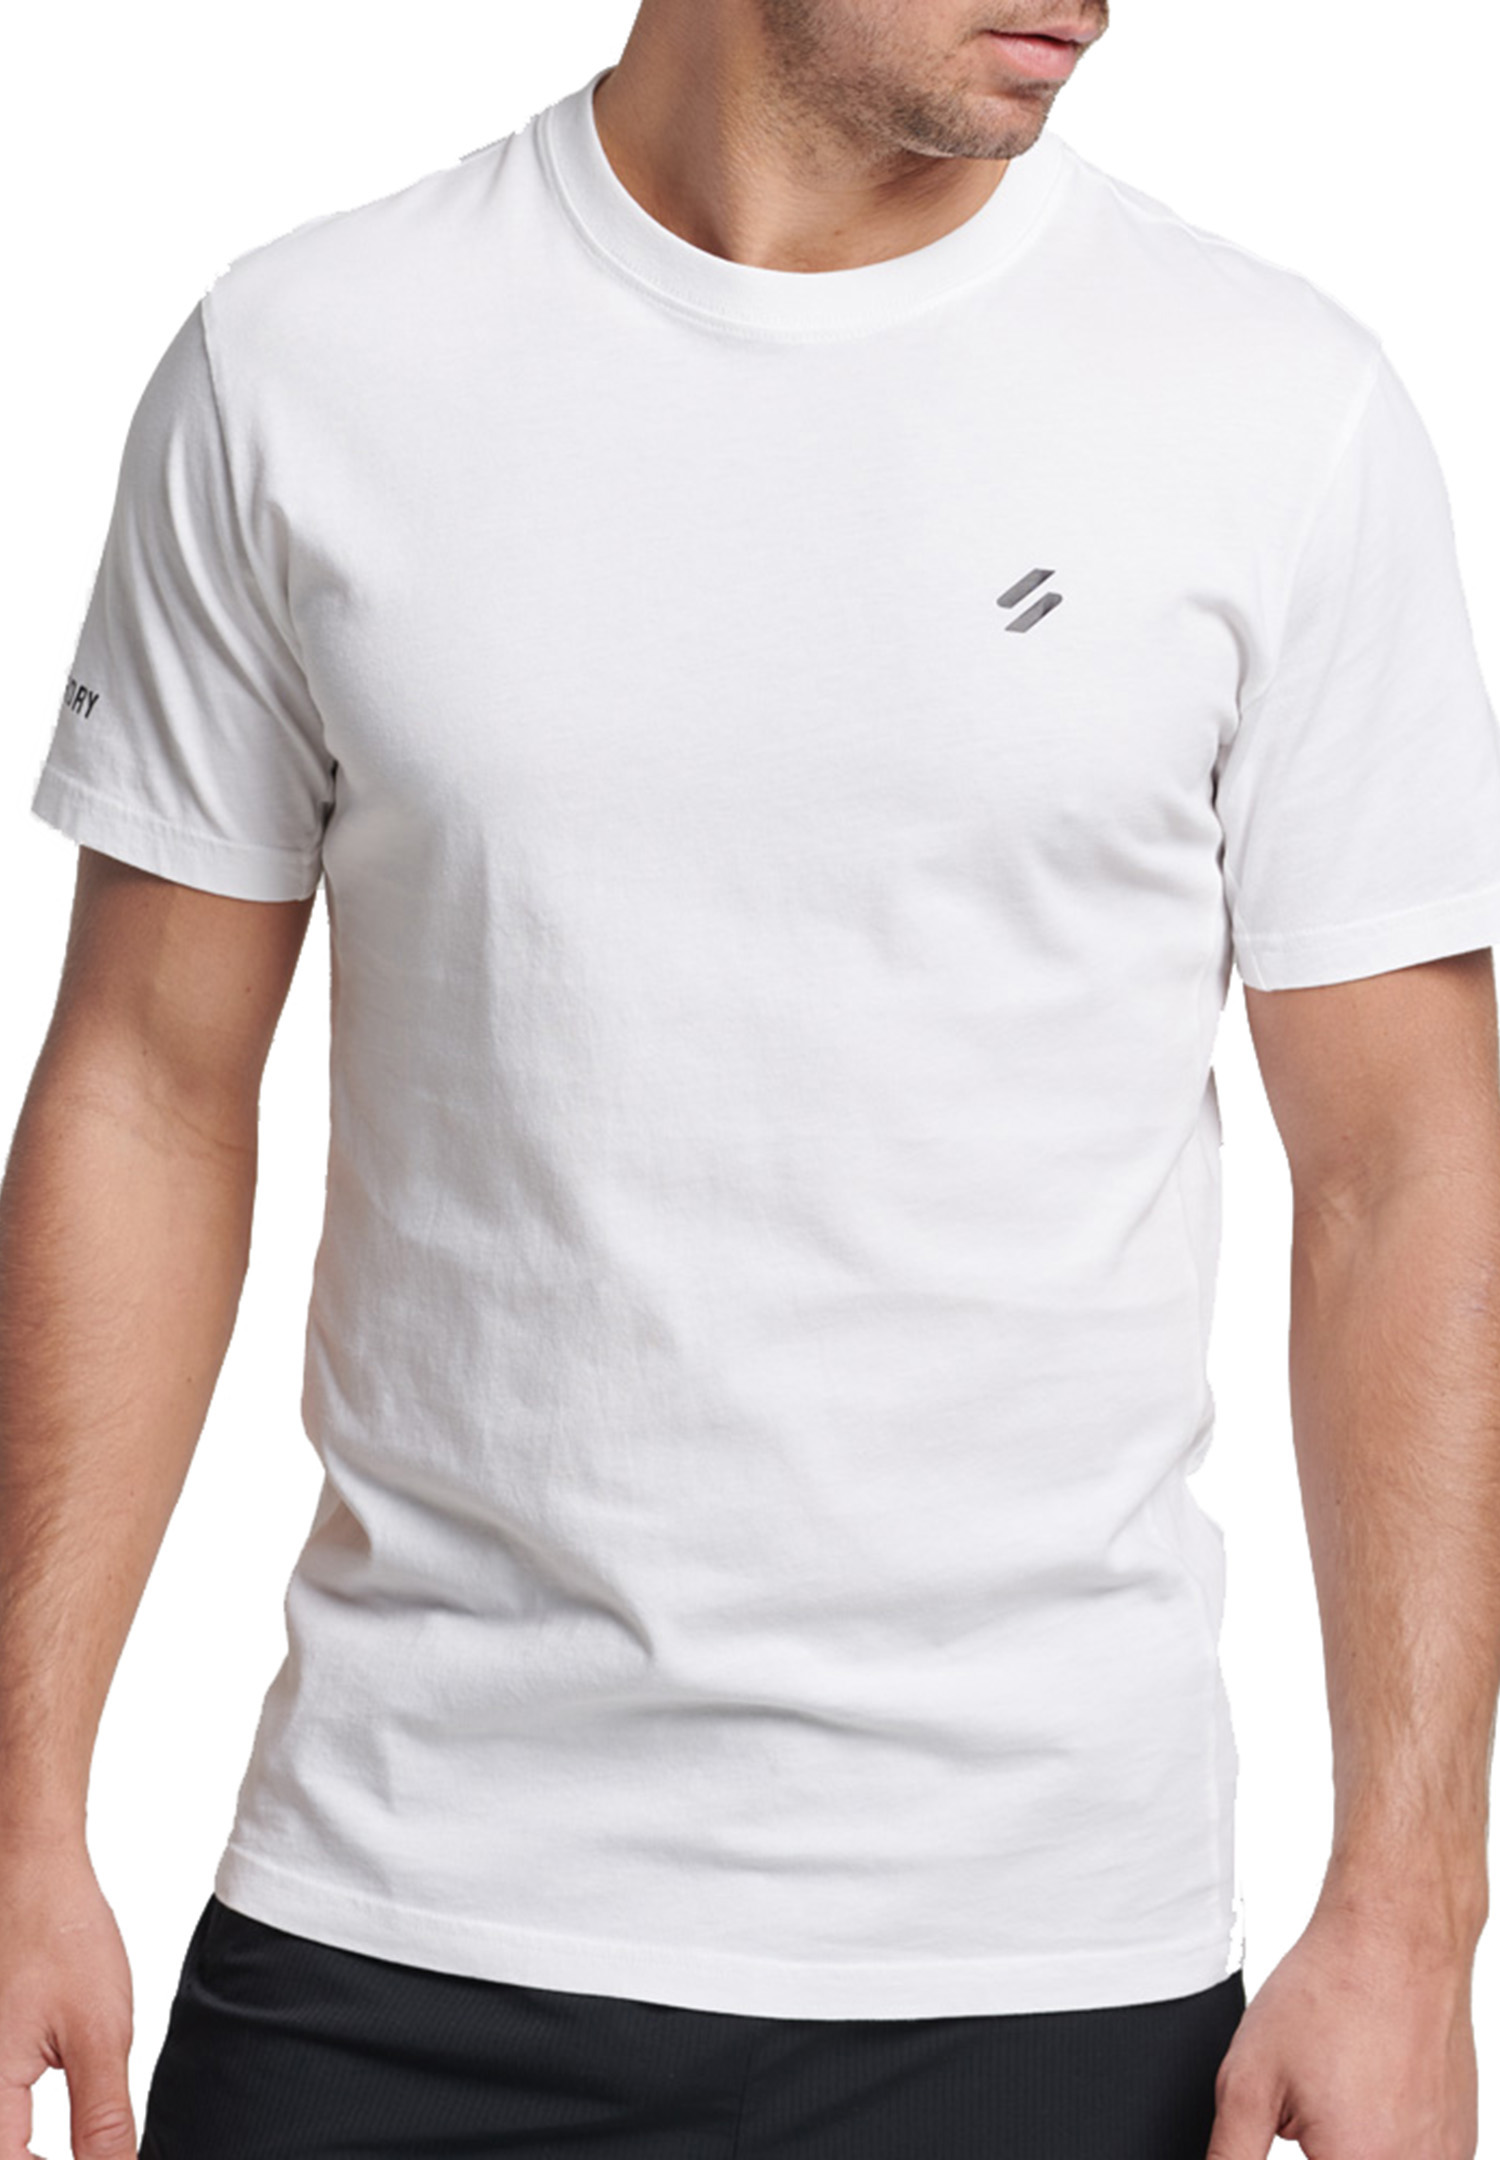 Superdry Core Loose Sort Sleeve Tee T-Shirt Herren Shirt MS311304A weiß von Superdry